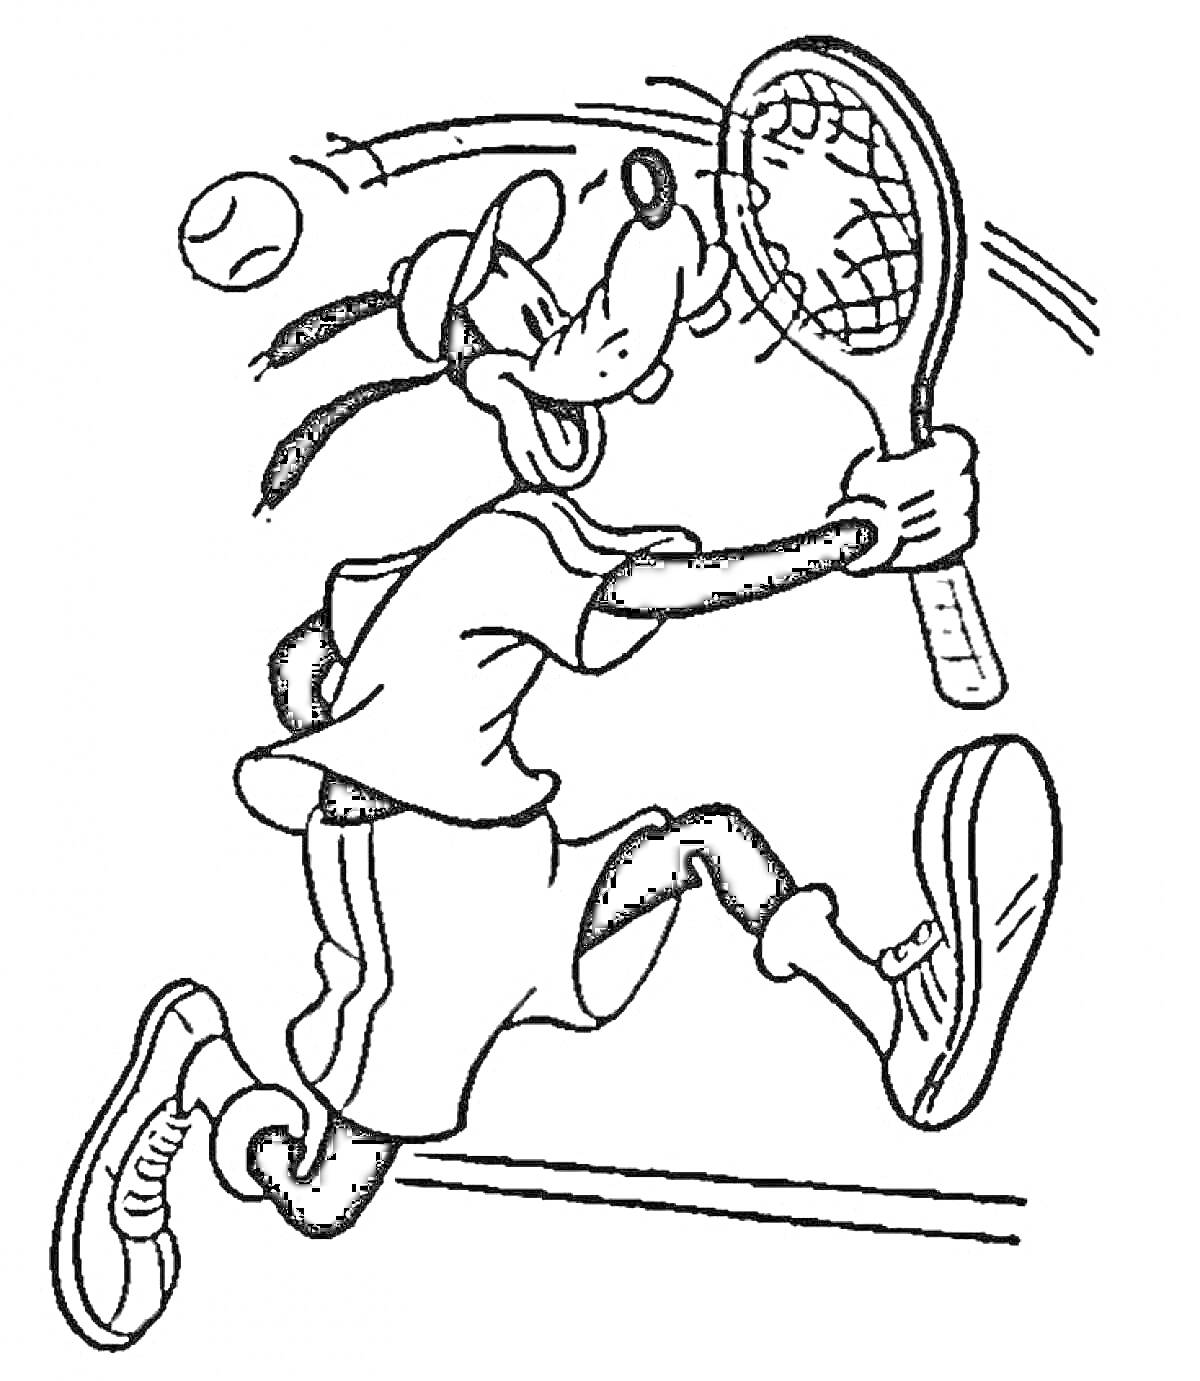 Персонаж с длинными ушами играет в теннис, держа ракетку одной рукой, в окружении теннисного мяча